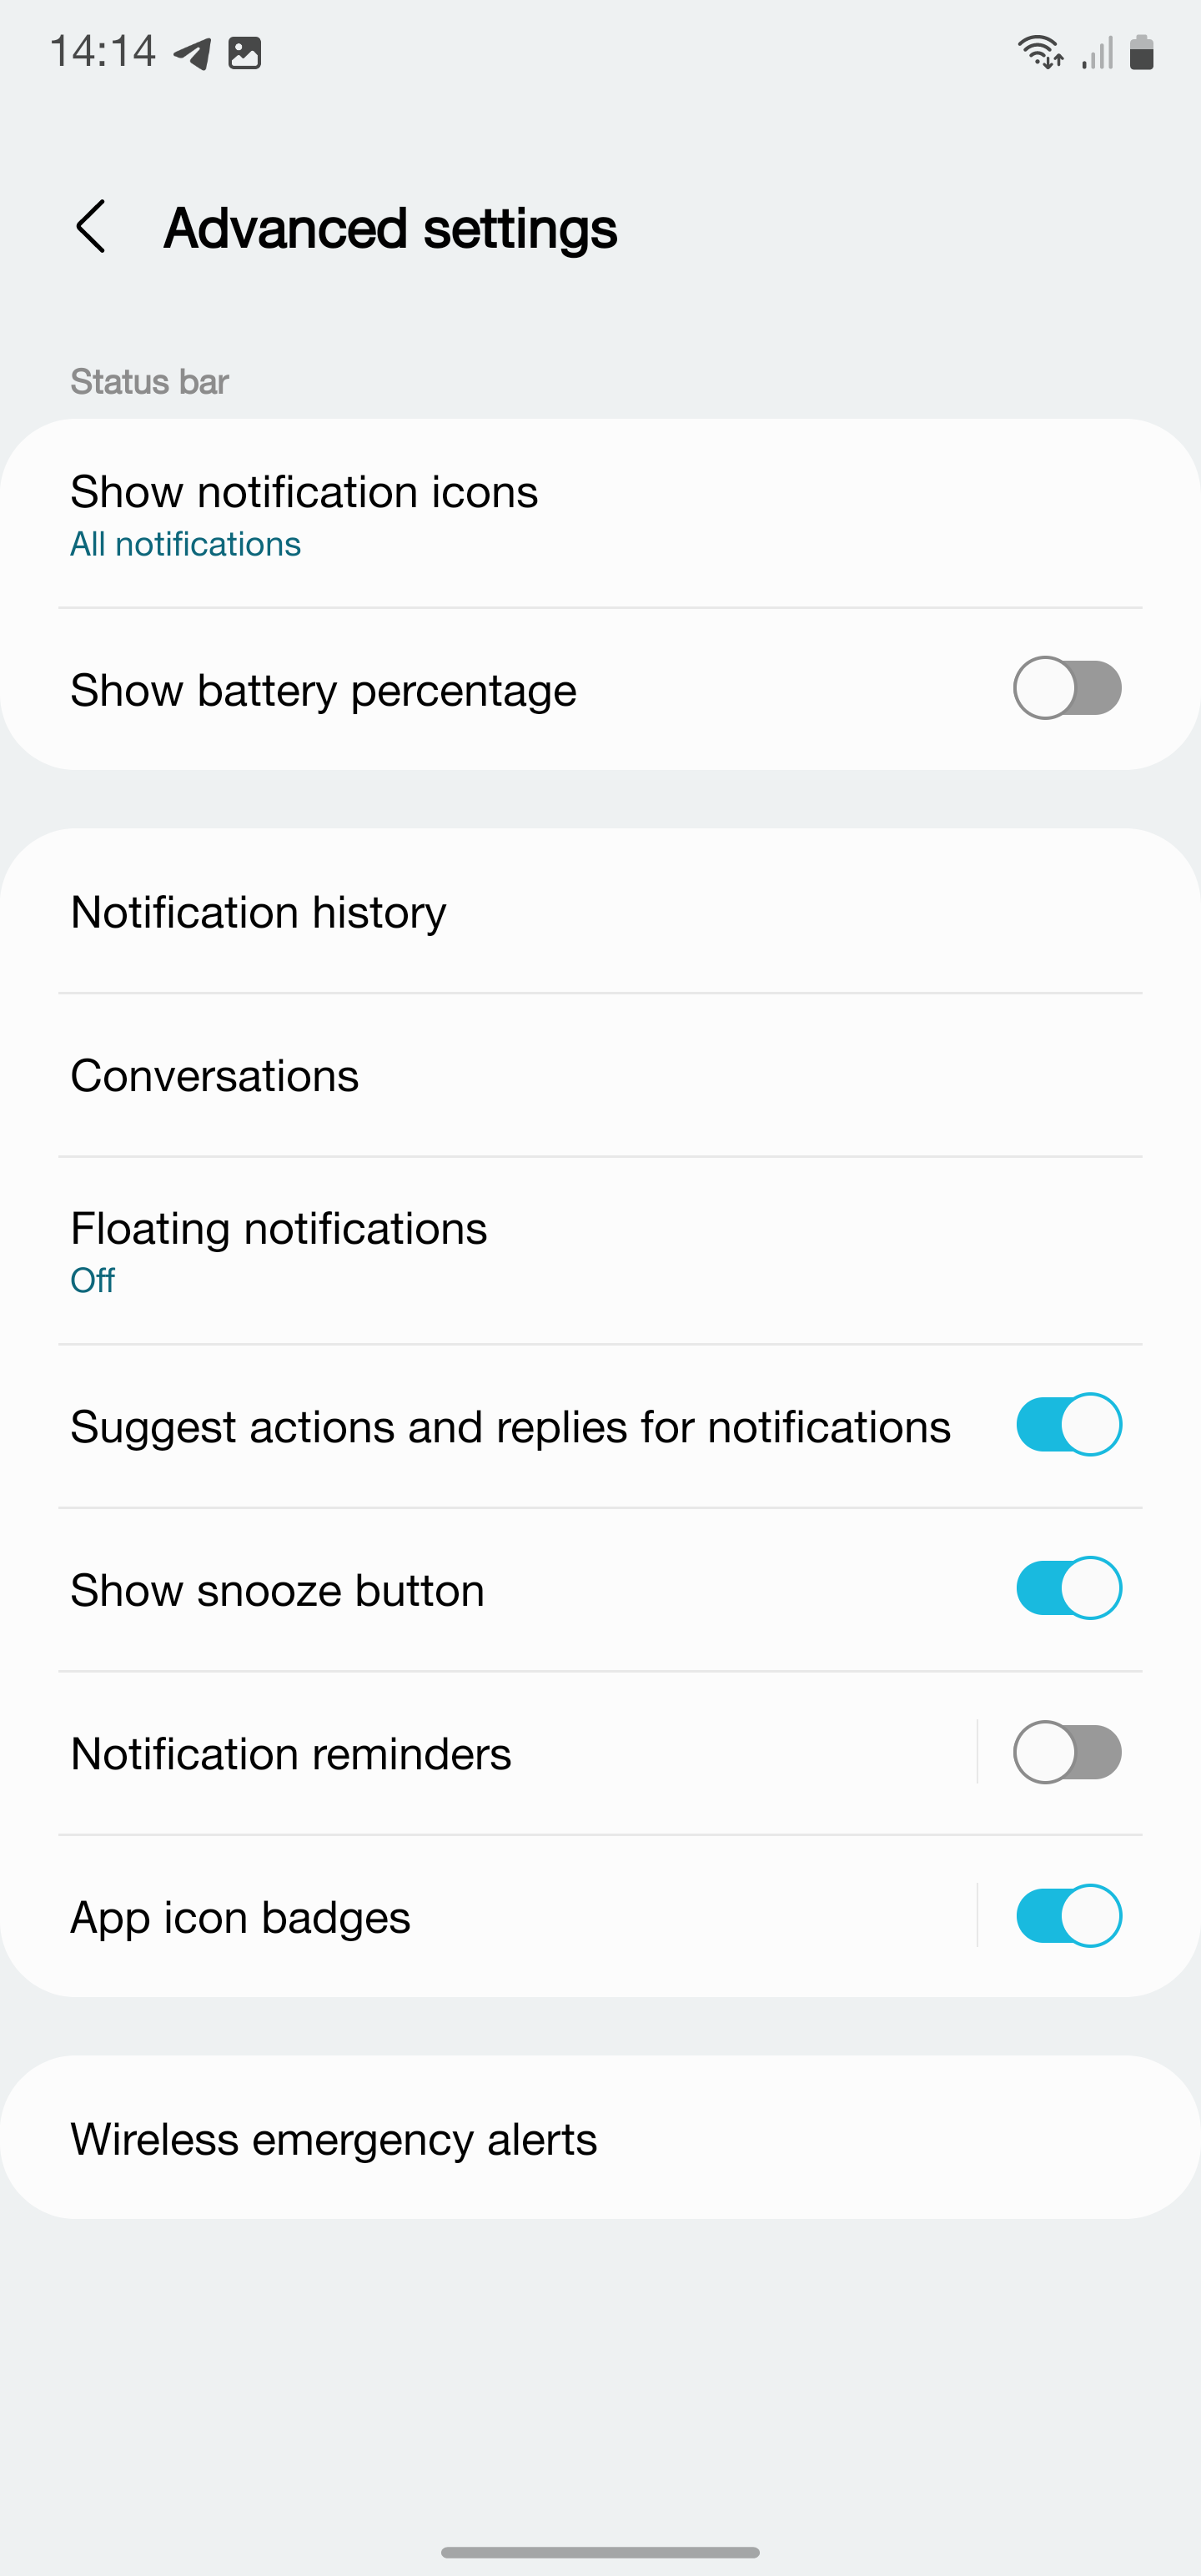 Configurações de notificação com soneca ativada no Android.